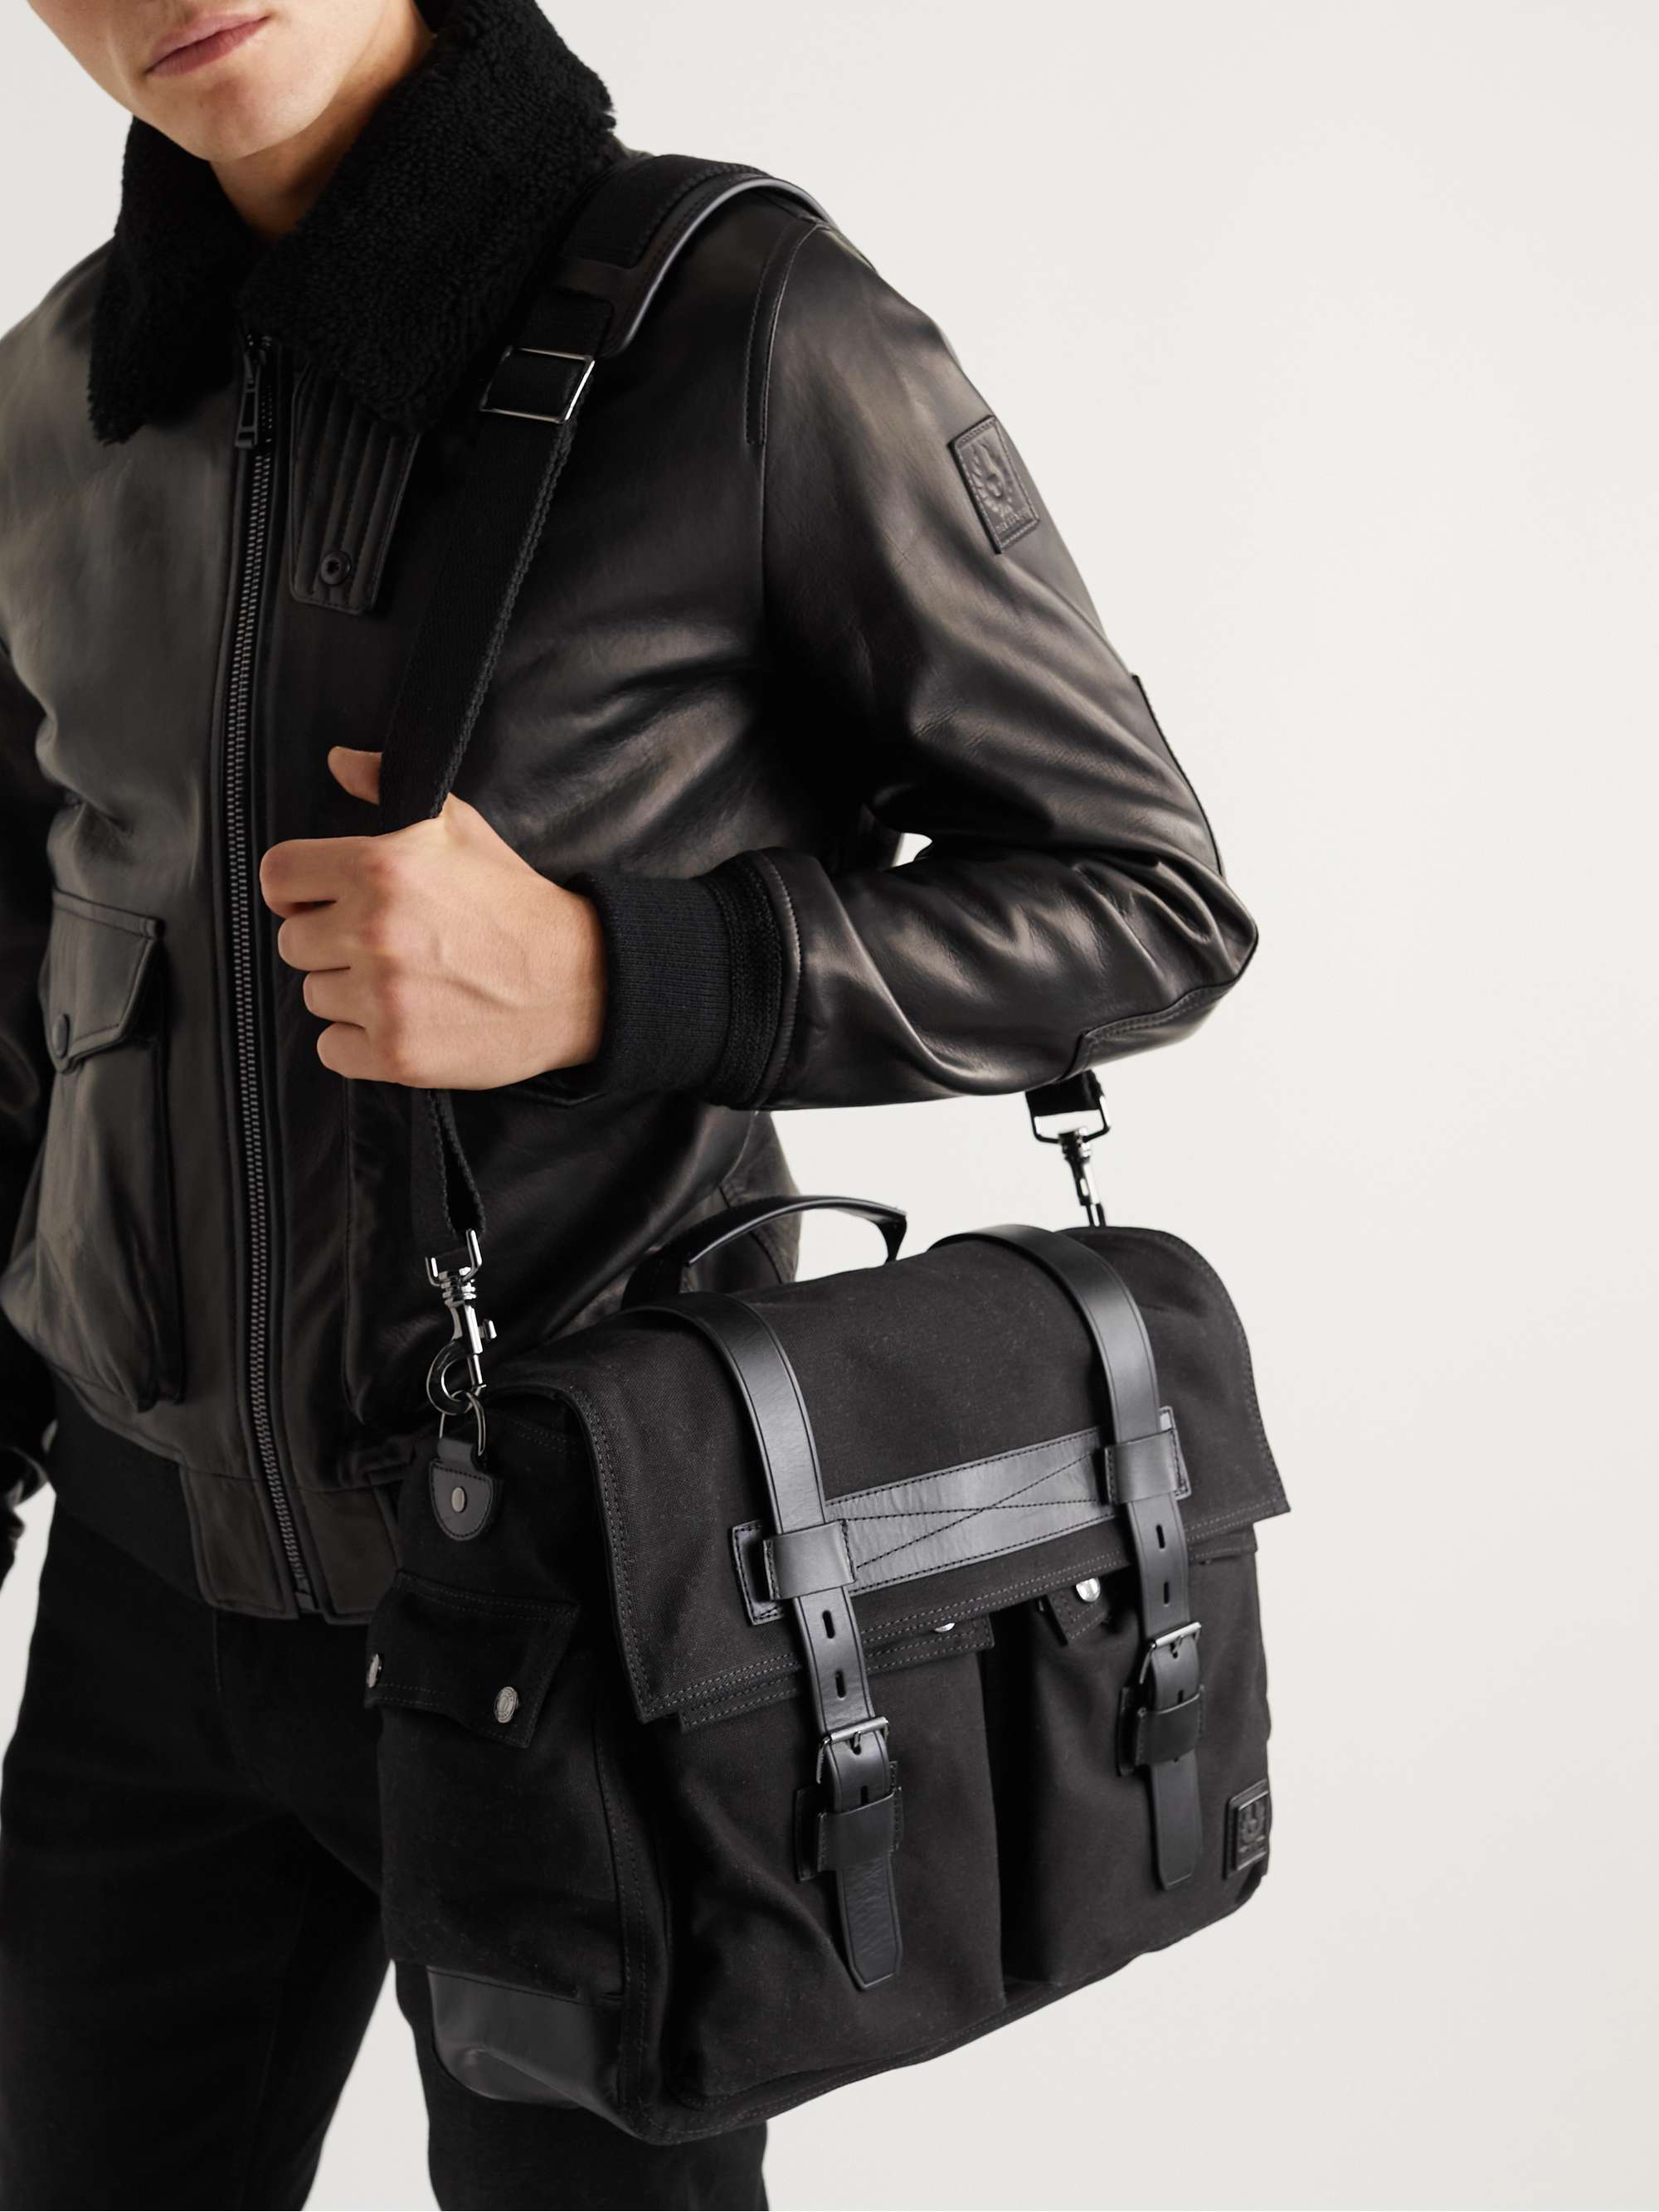 Black Leather Messenger Bag | BELSTAFF | MR PORTER